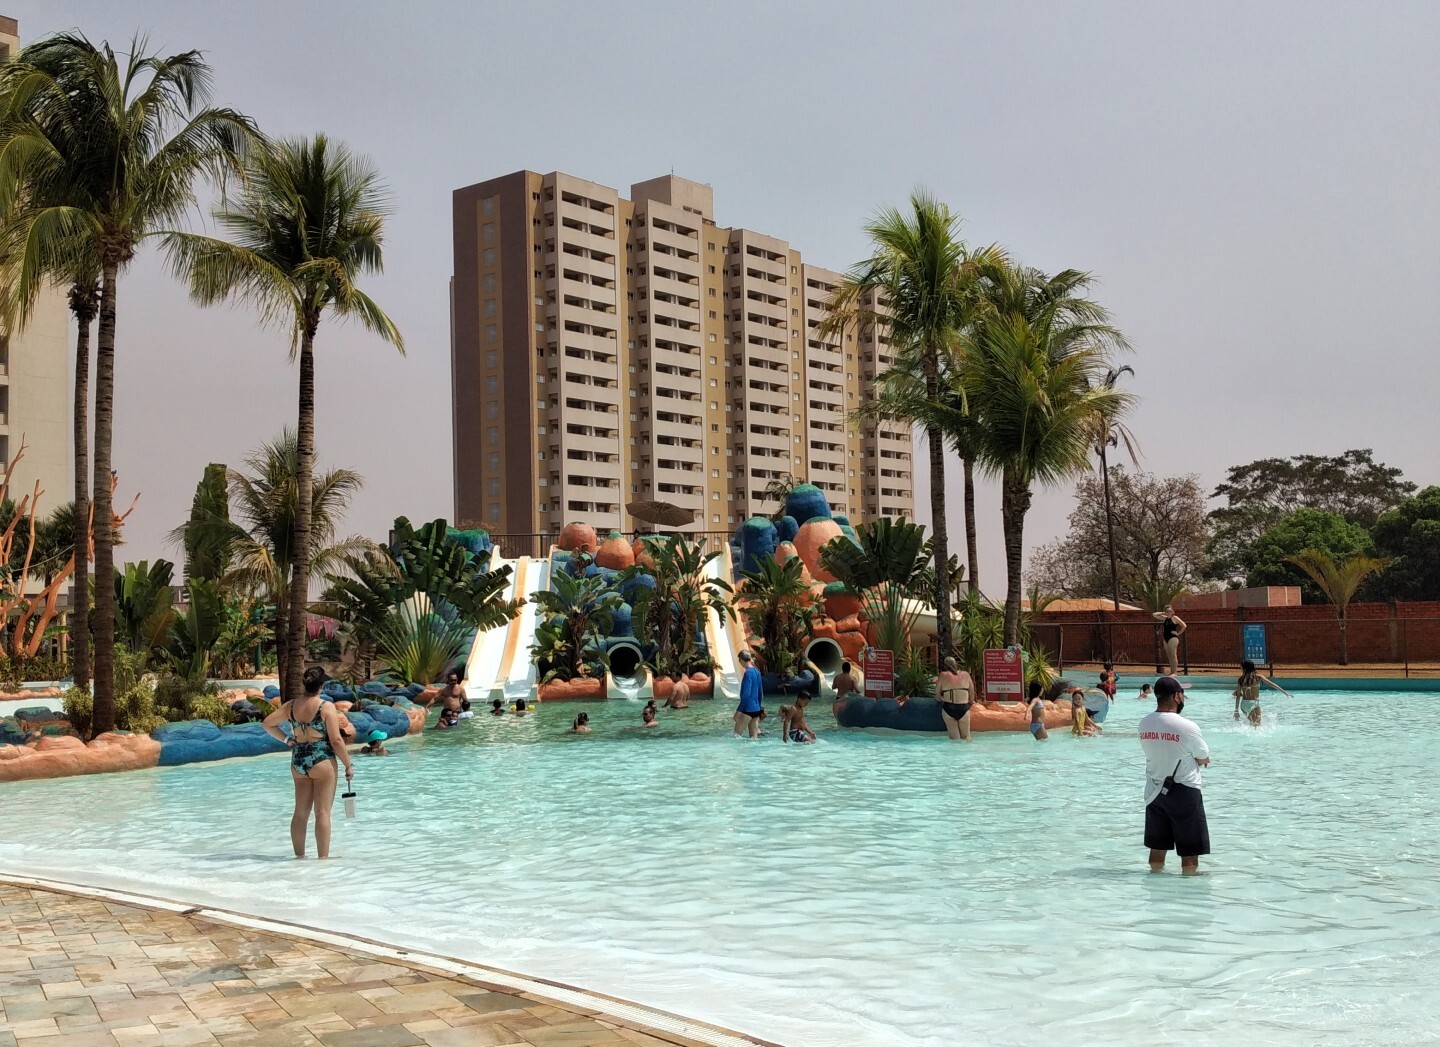 Hóspedes do Hot Beach Suites têm acesso livre ao parque aquático Hot Beach